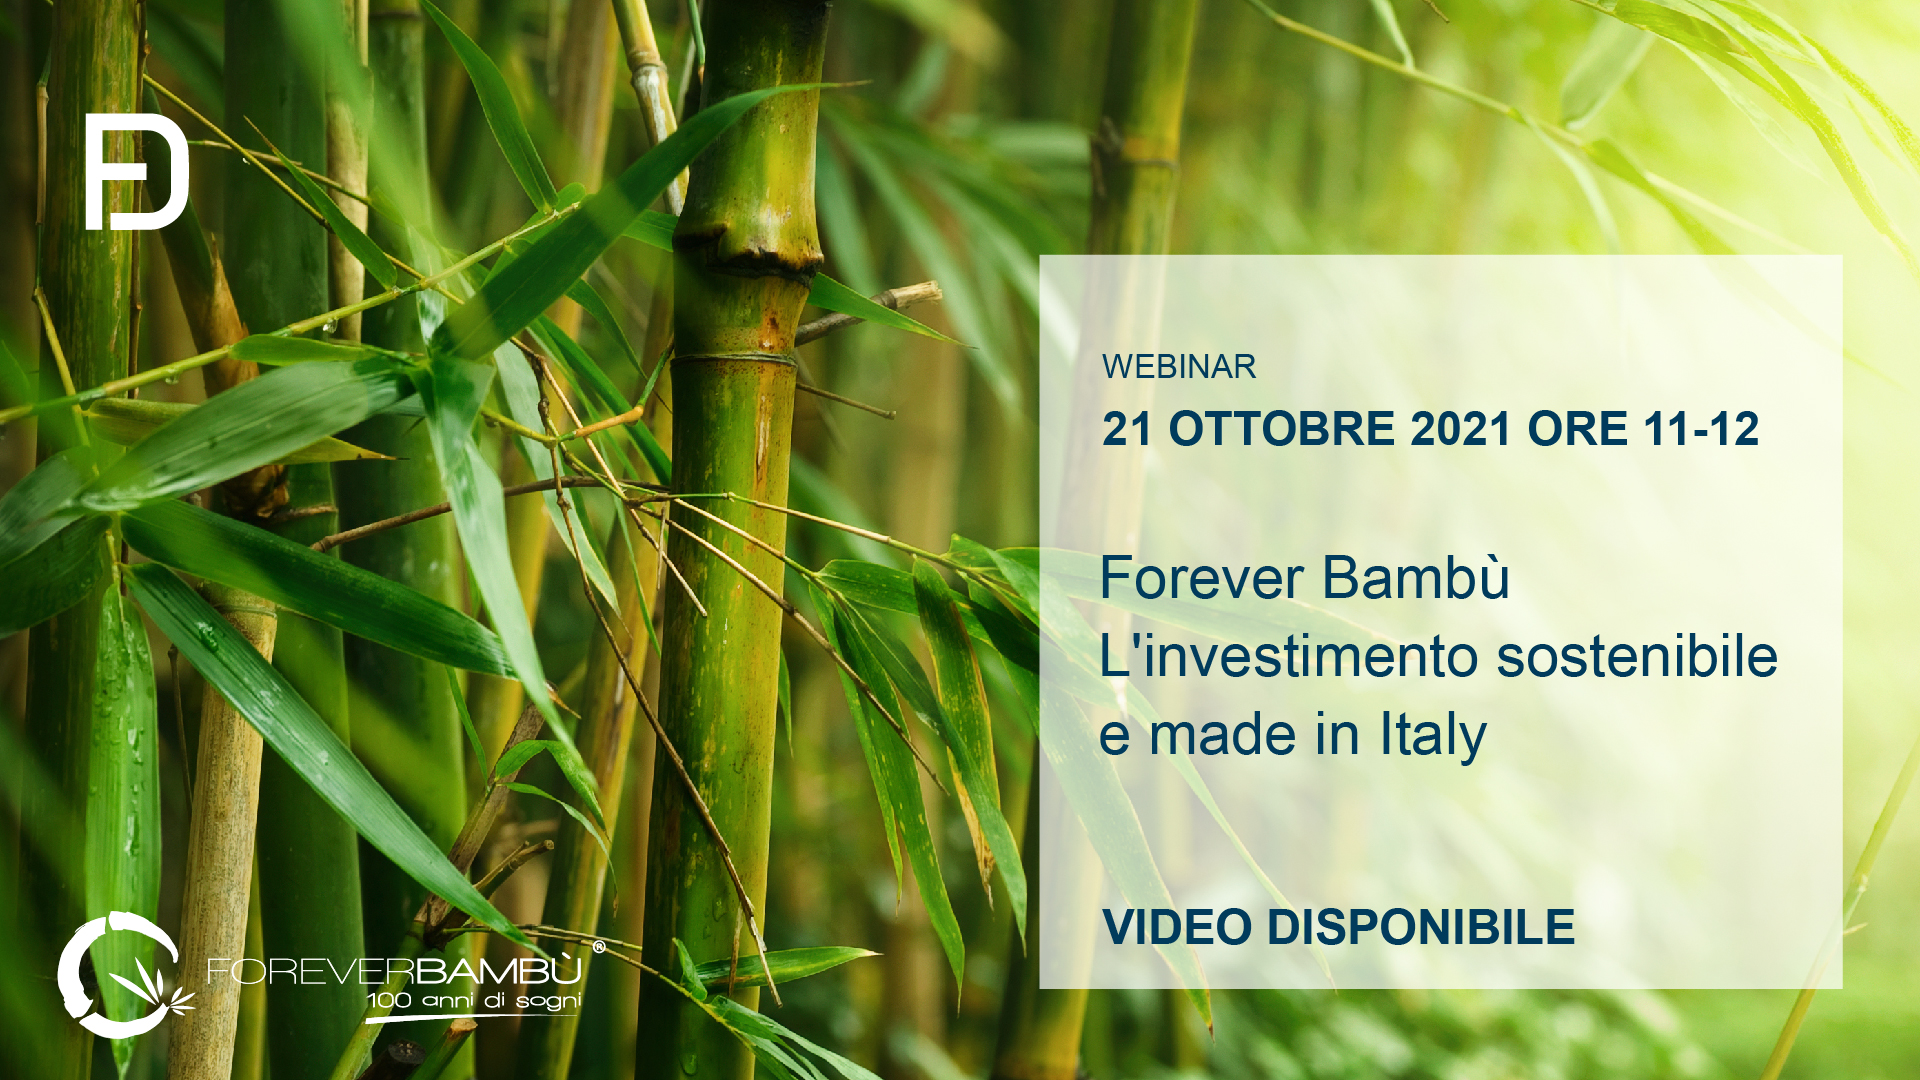 Forever Bambù – L’investimento sostenibile e made in Italy